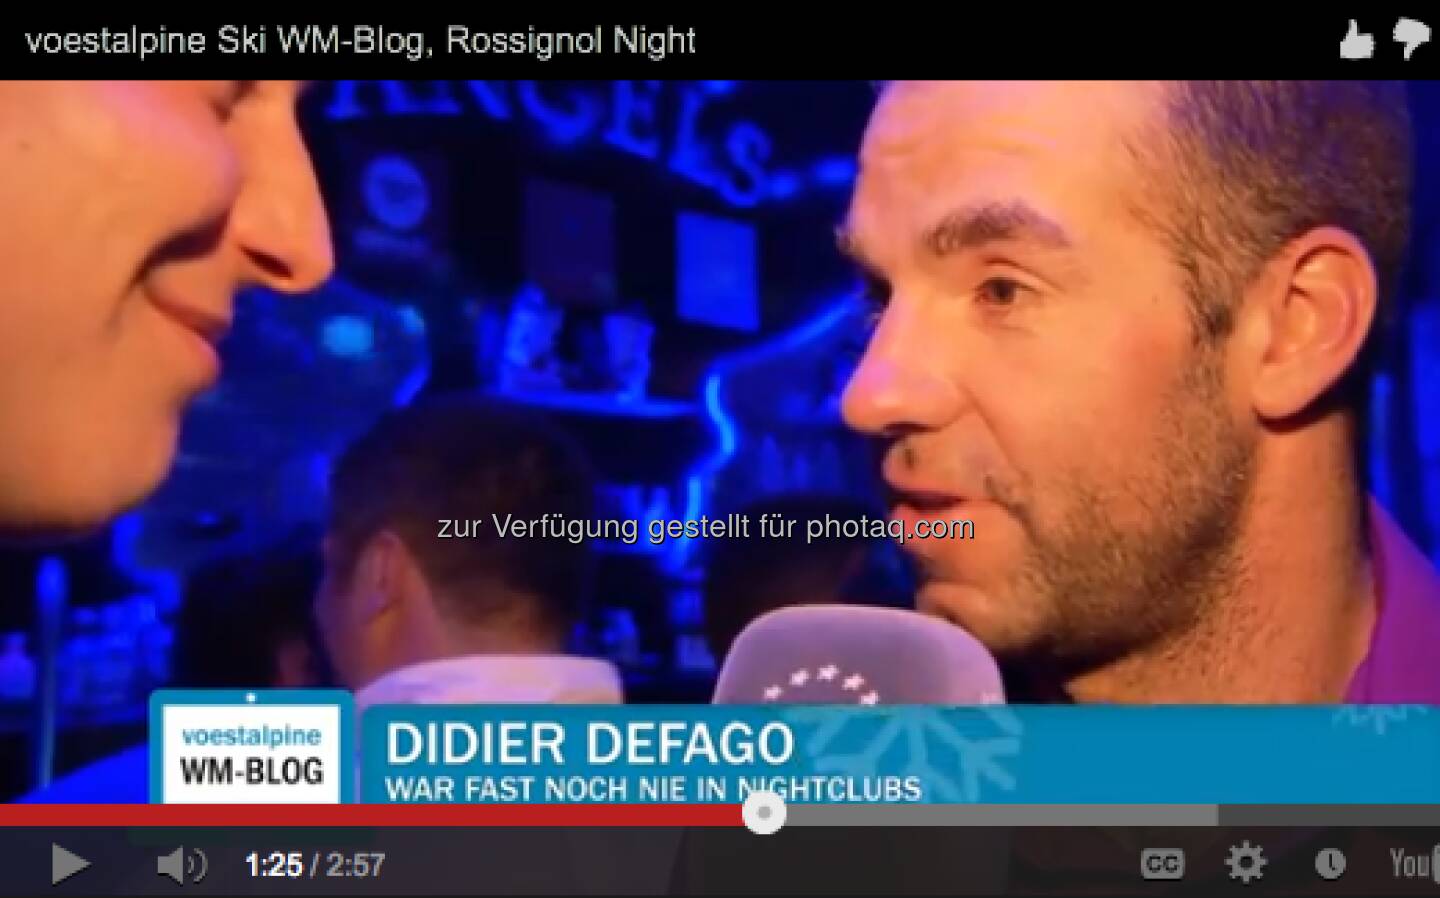 Didier Defago - Rossignol feiert und alle sind dabei - http://voestalpine-wm-blog.at/2013/02/12/rossignol-feiert-und-alle-sind-dabei/#.URpanY7aK_Q